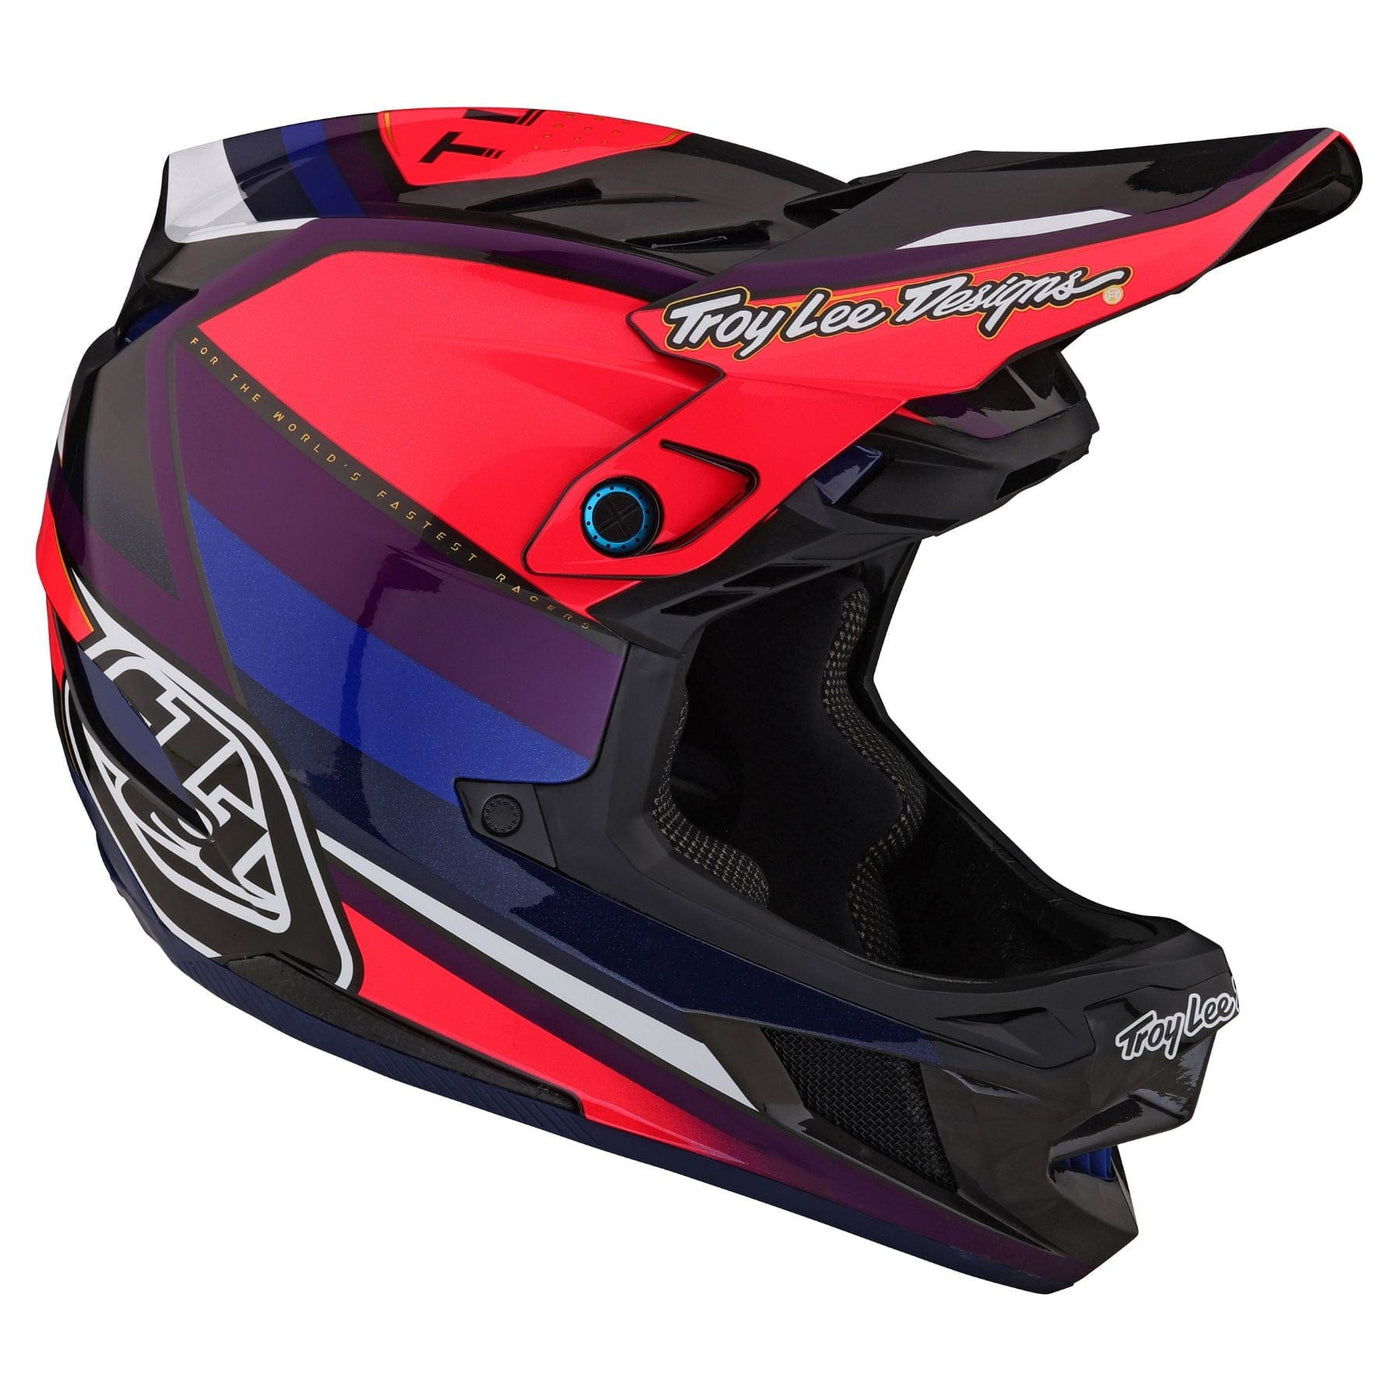 Troy Lee Designs D4 Carbon MIPS Helmet Reverb - Pink/Purple